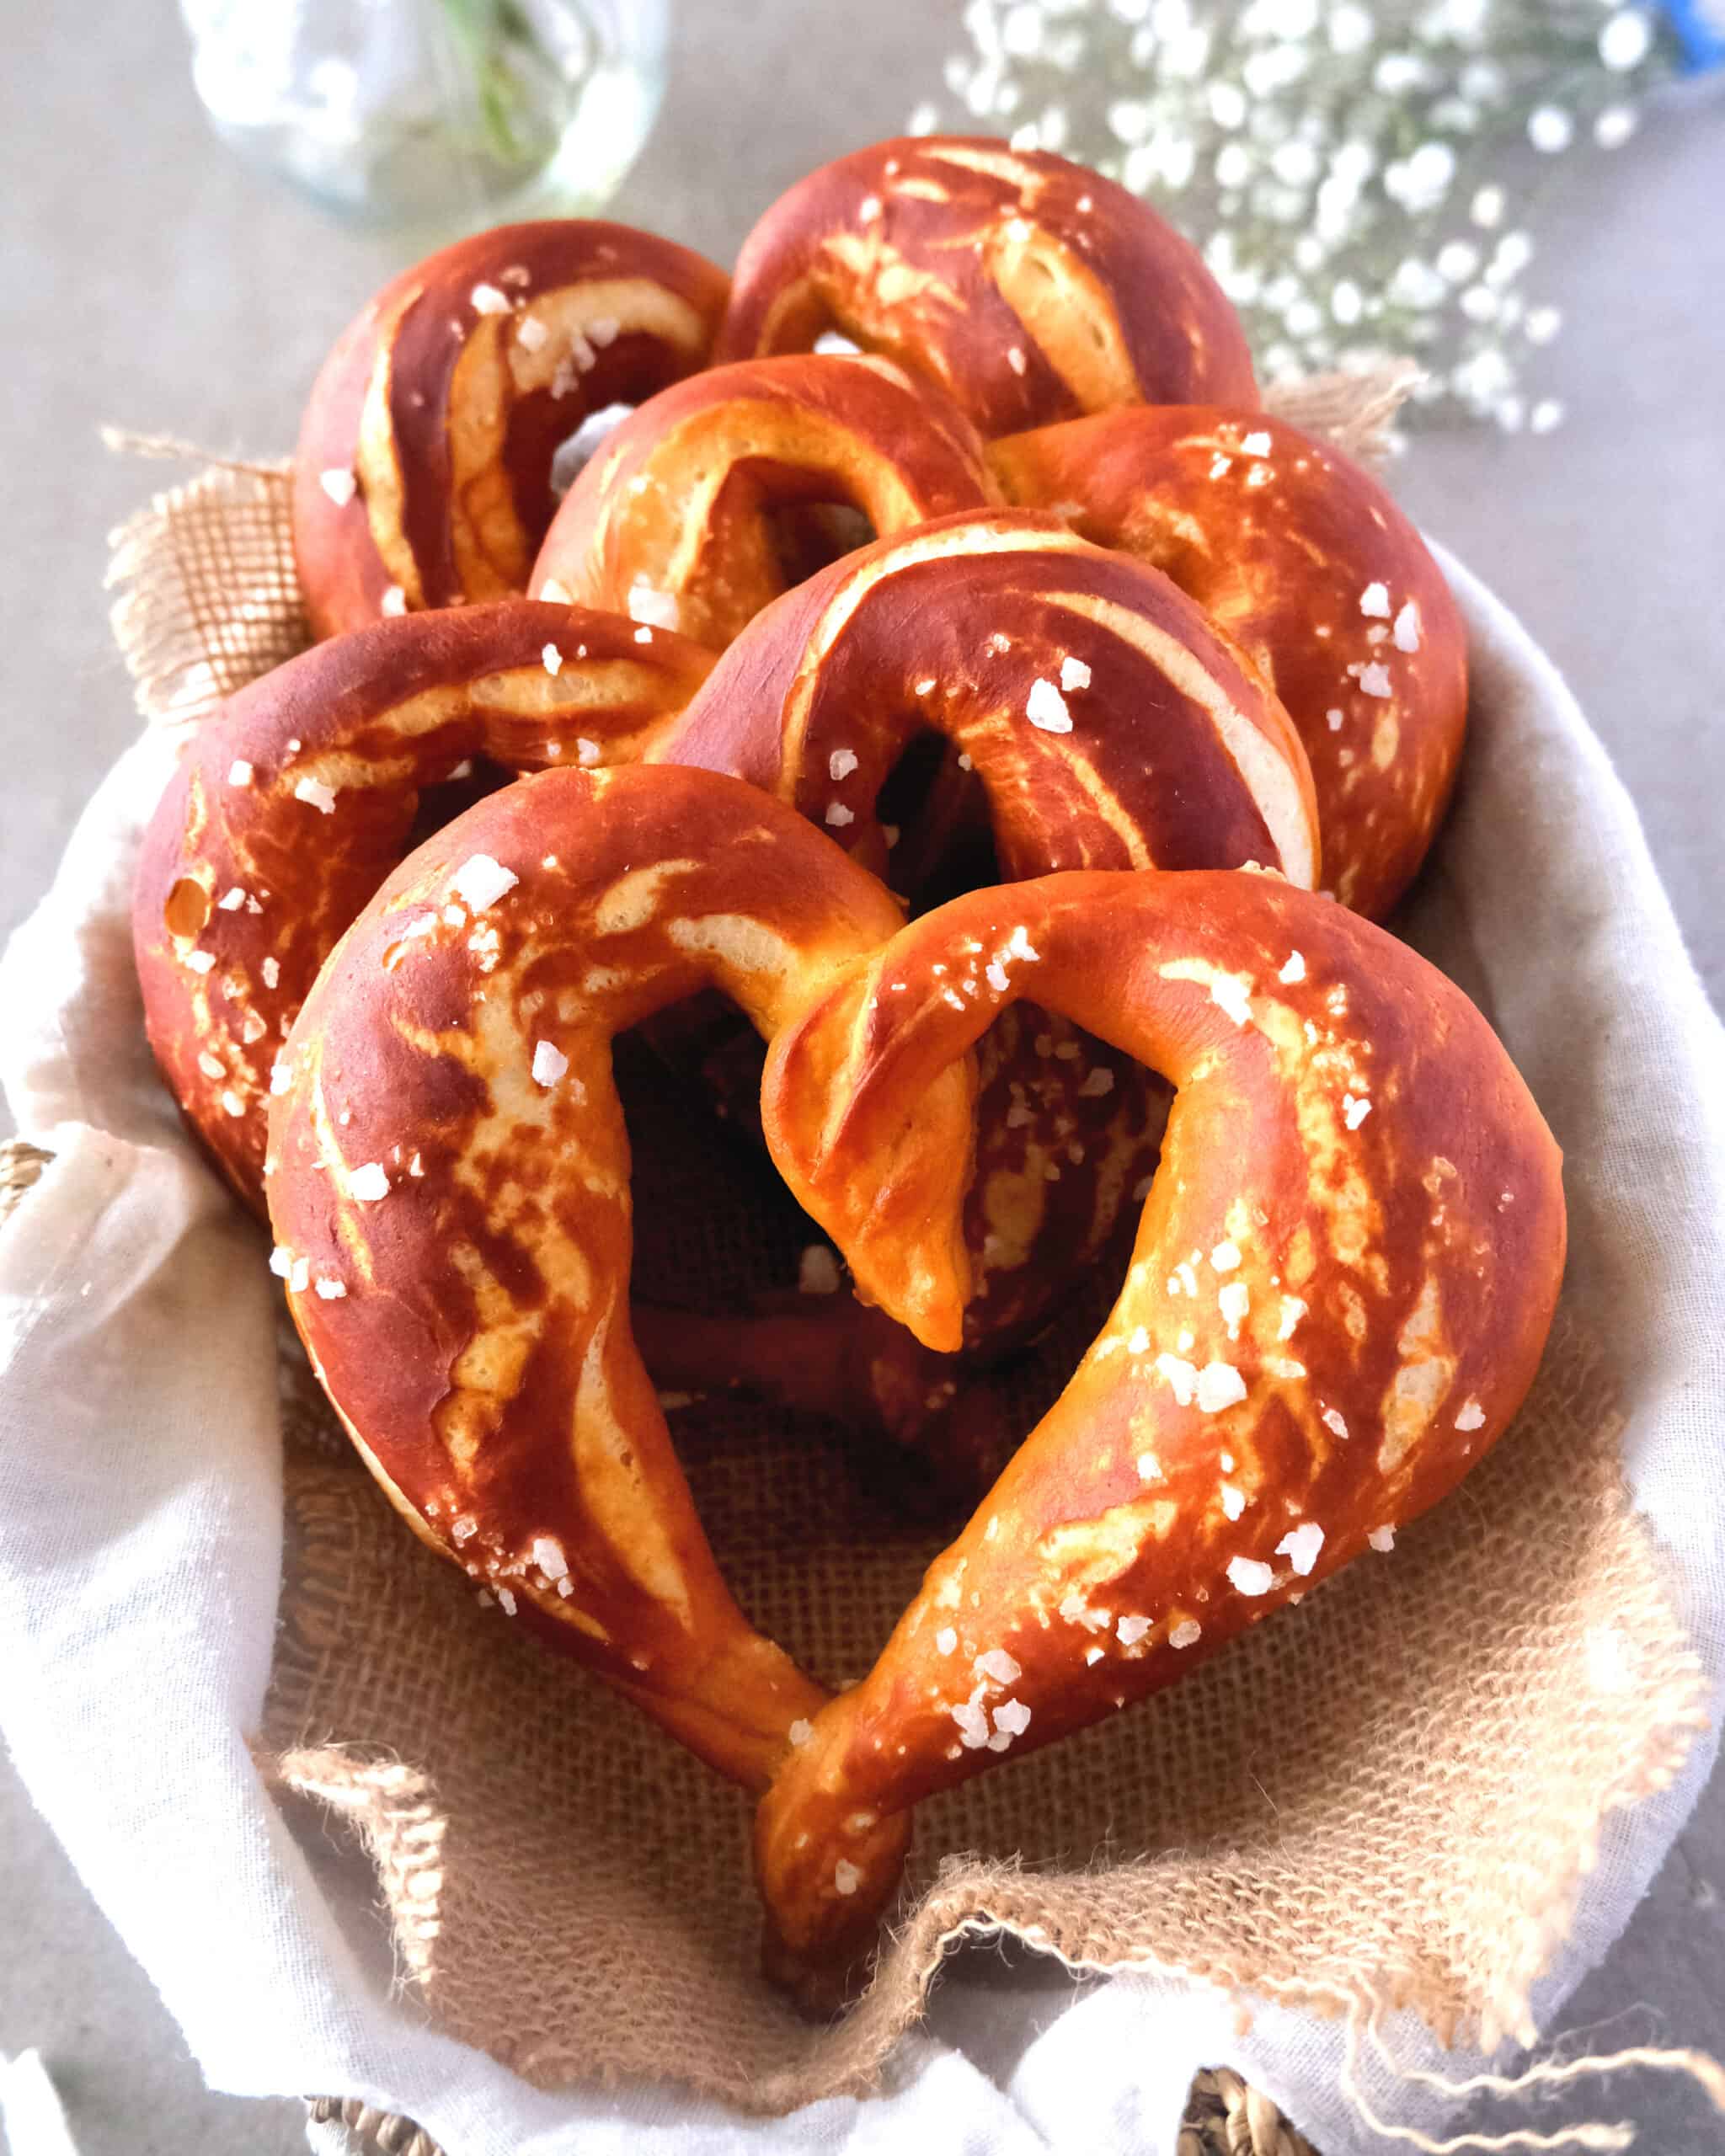 Heart shaped pretzels